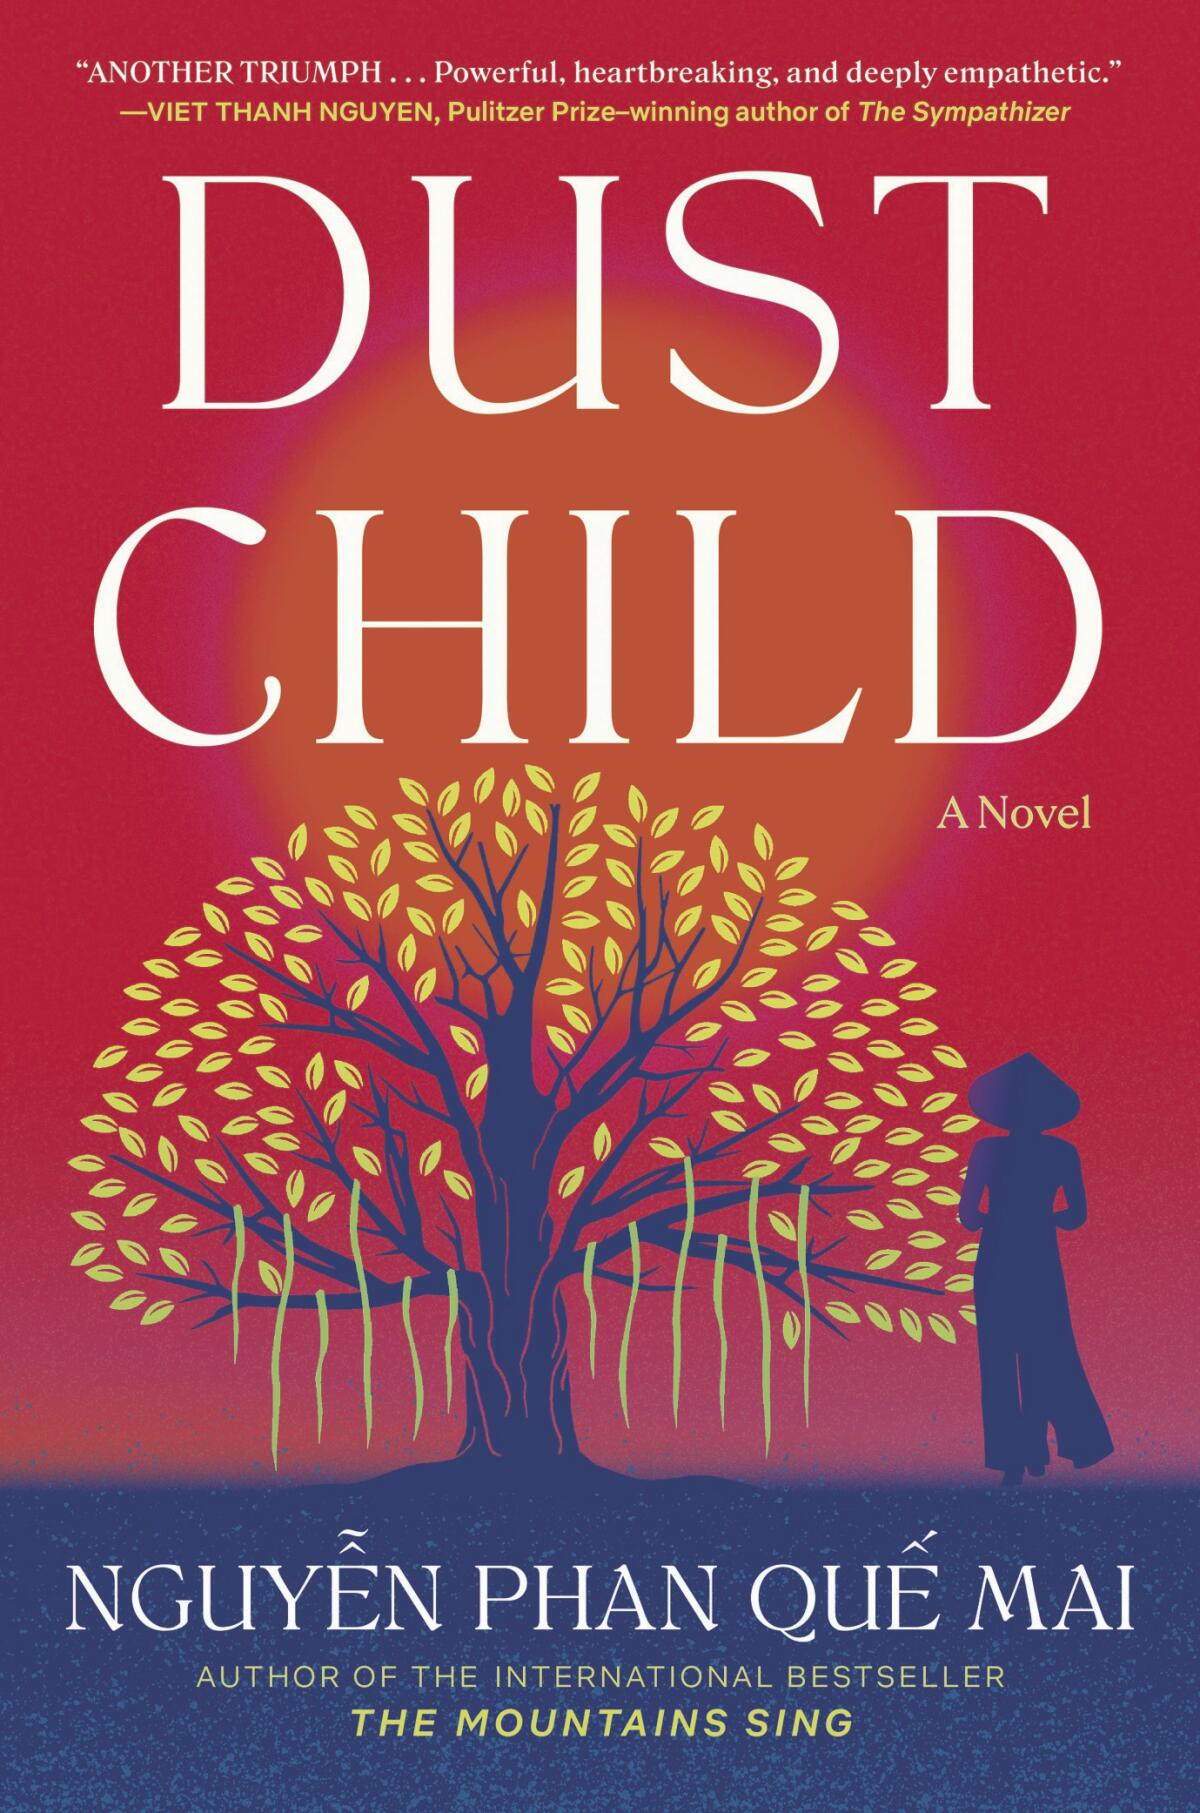 The dust jacket for Nguyễn Phan Quế Mai's new novel "Dust Child."